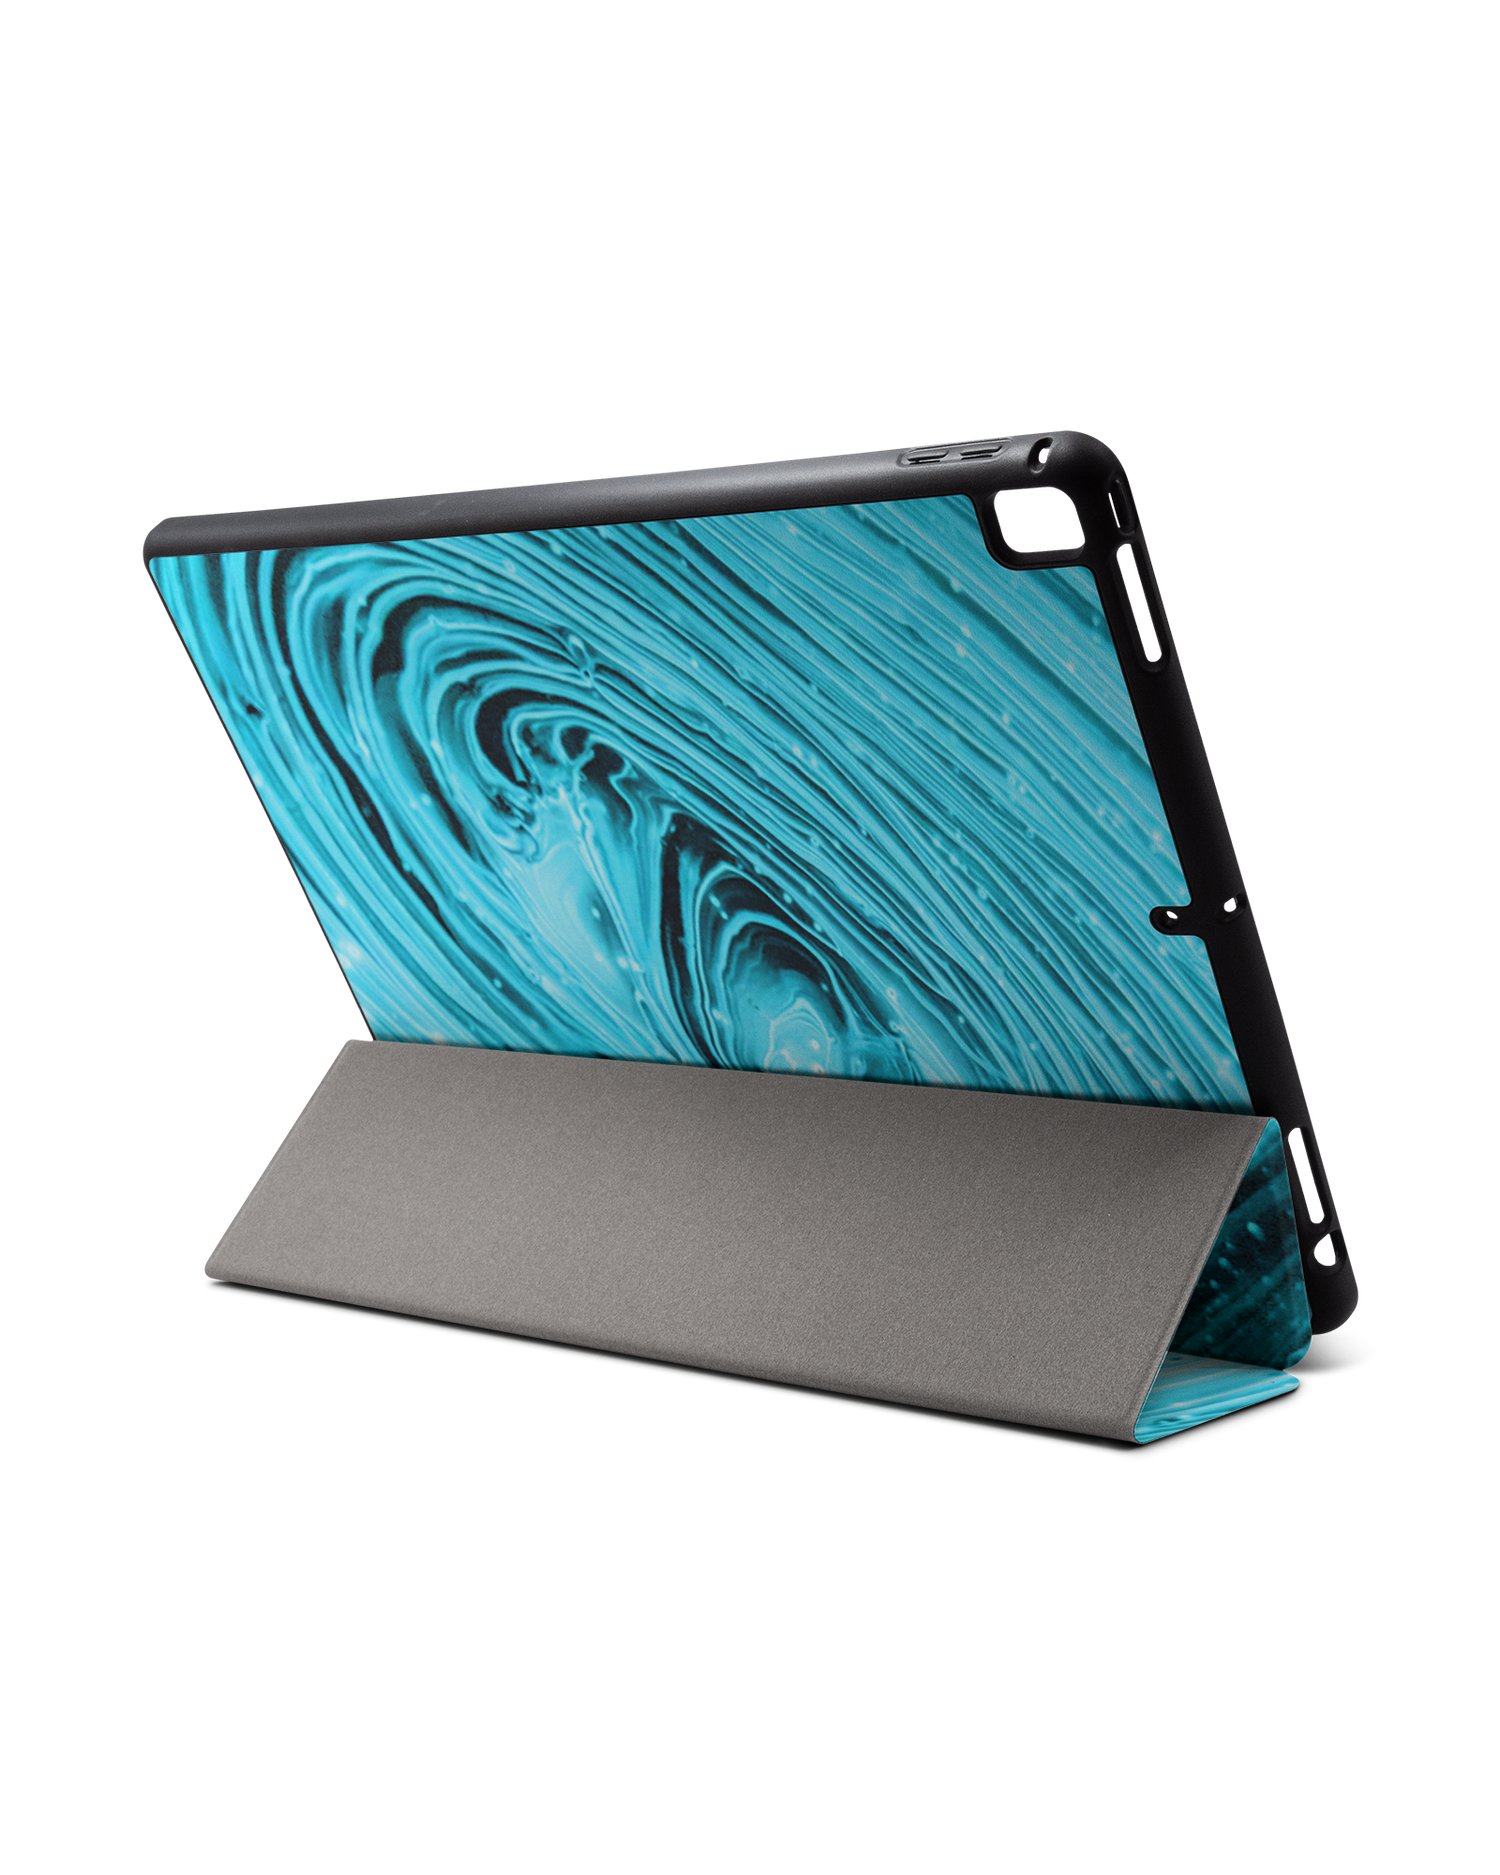 Turquoise Ripples iPad Hülle mit Stifthalter für Apple iPad Pro 2 12.9'' (2017): Aufgestellt im Querformat von hinten